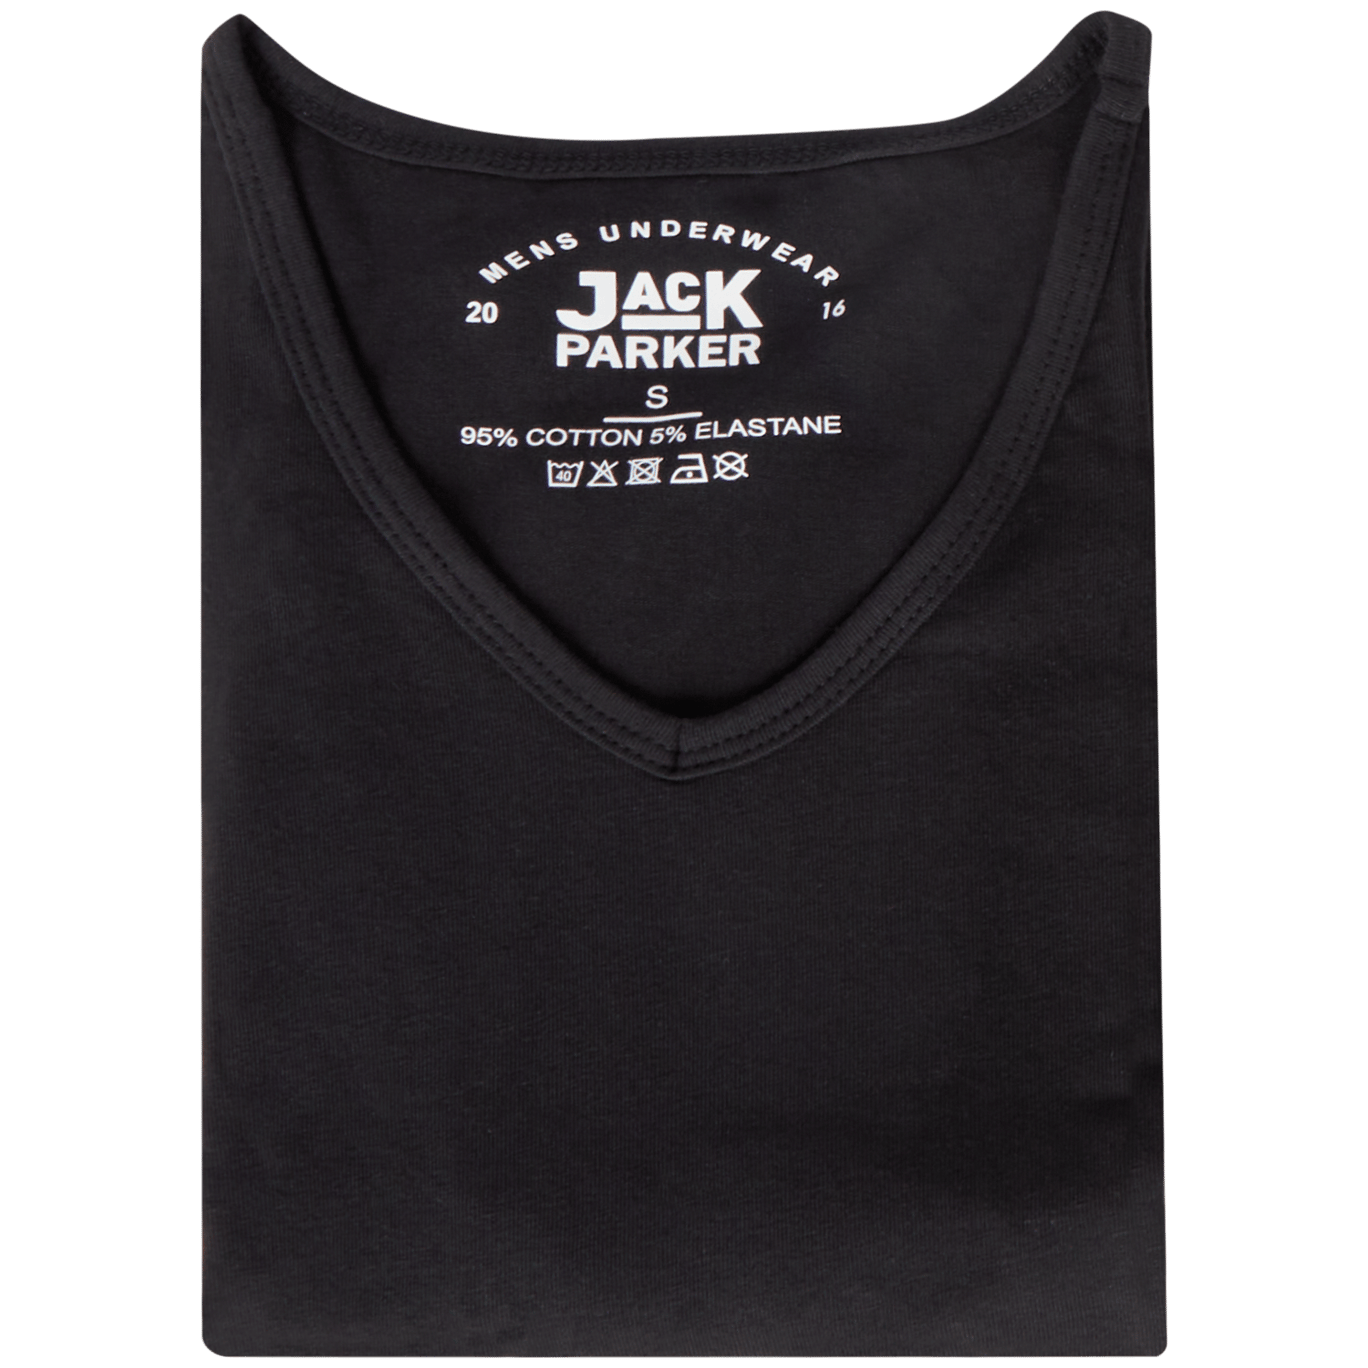 morgen Array incident Jack Parker T-shirt | Action.com